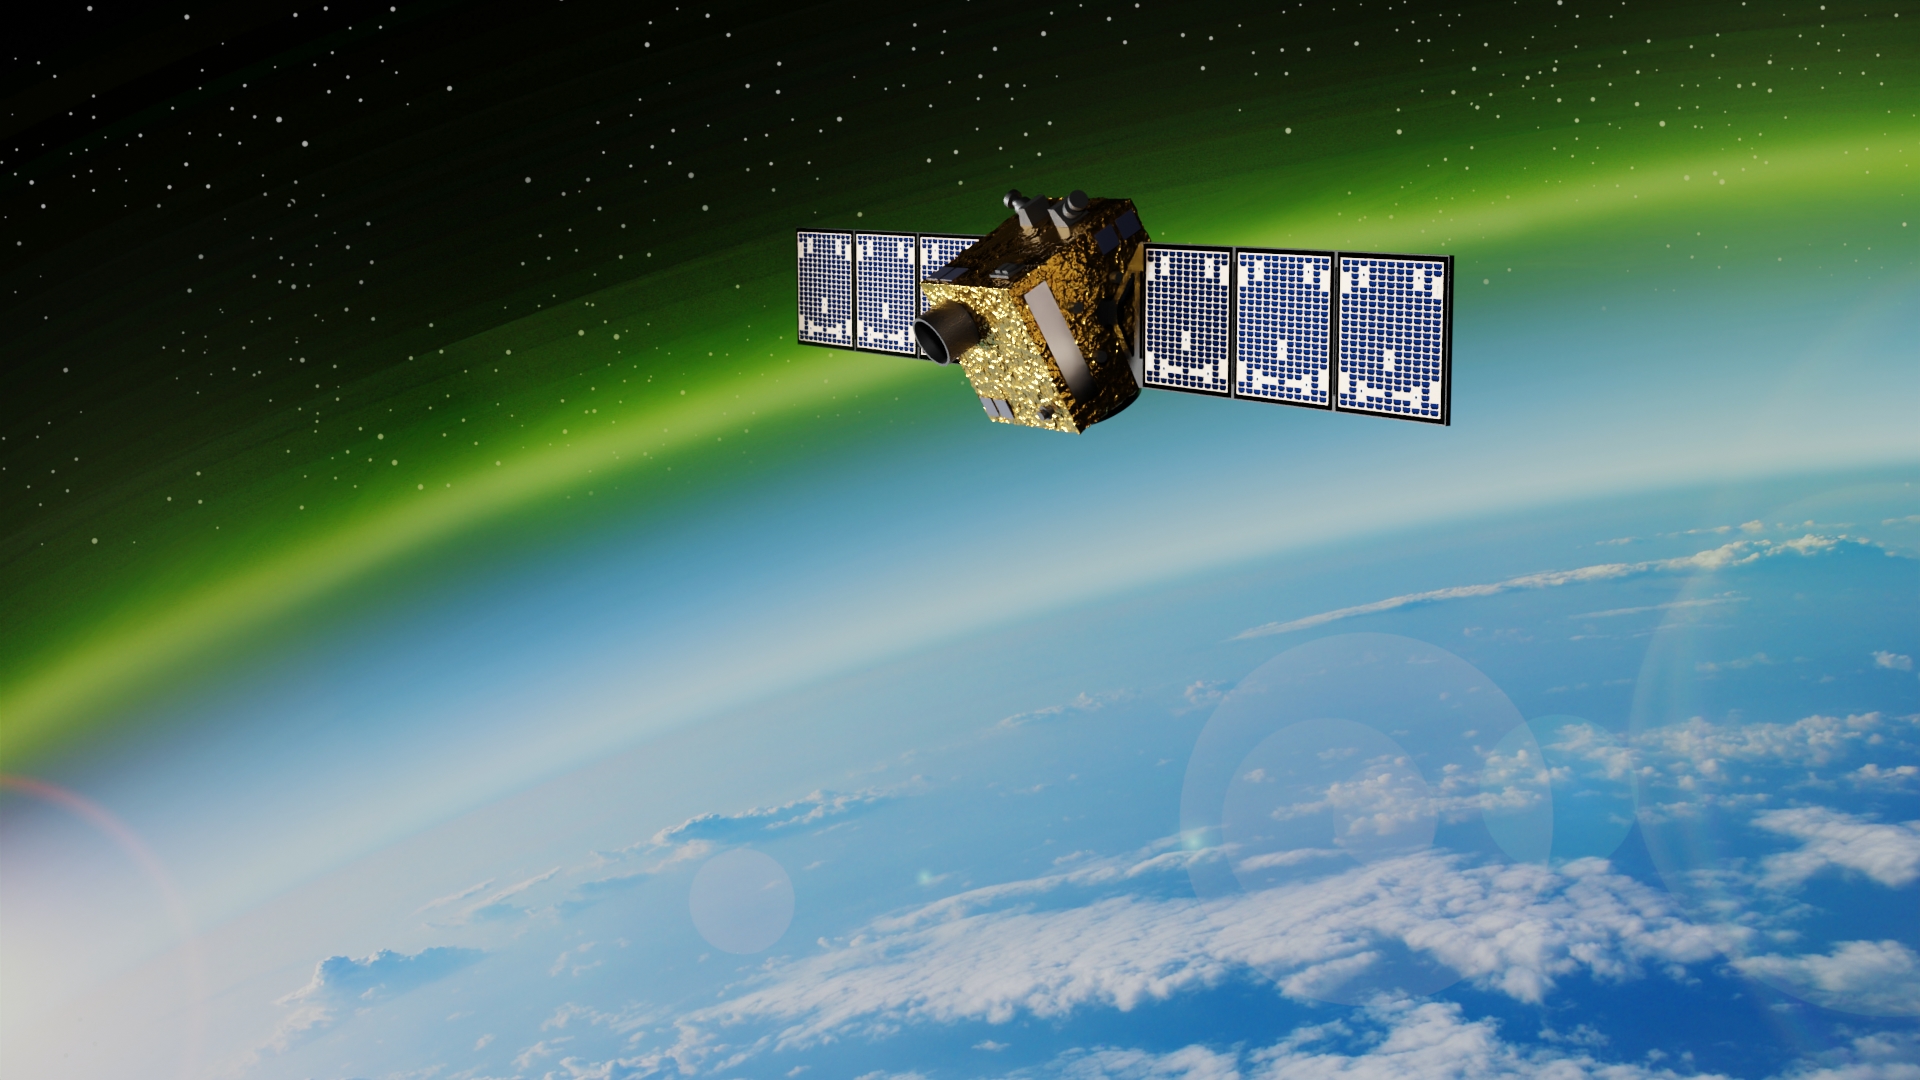 SOVA satellite in the orbit